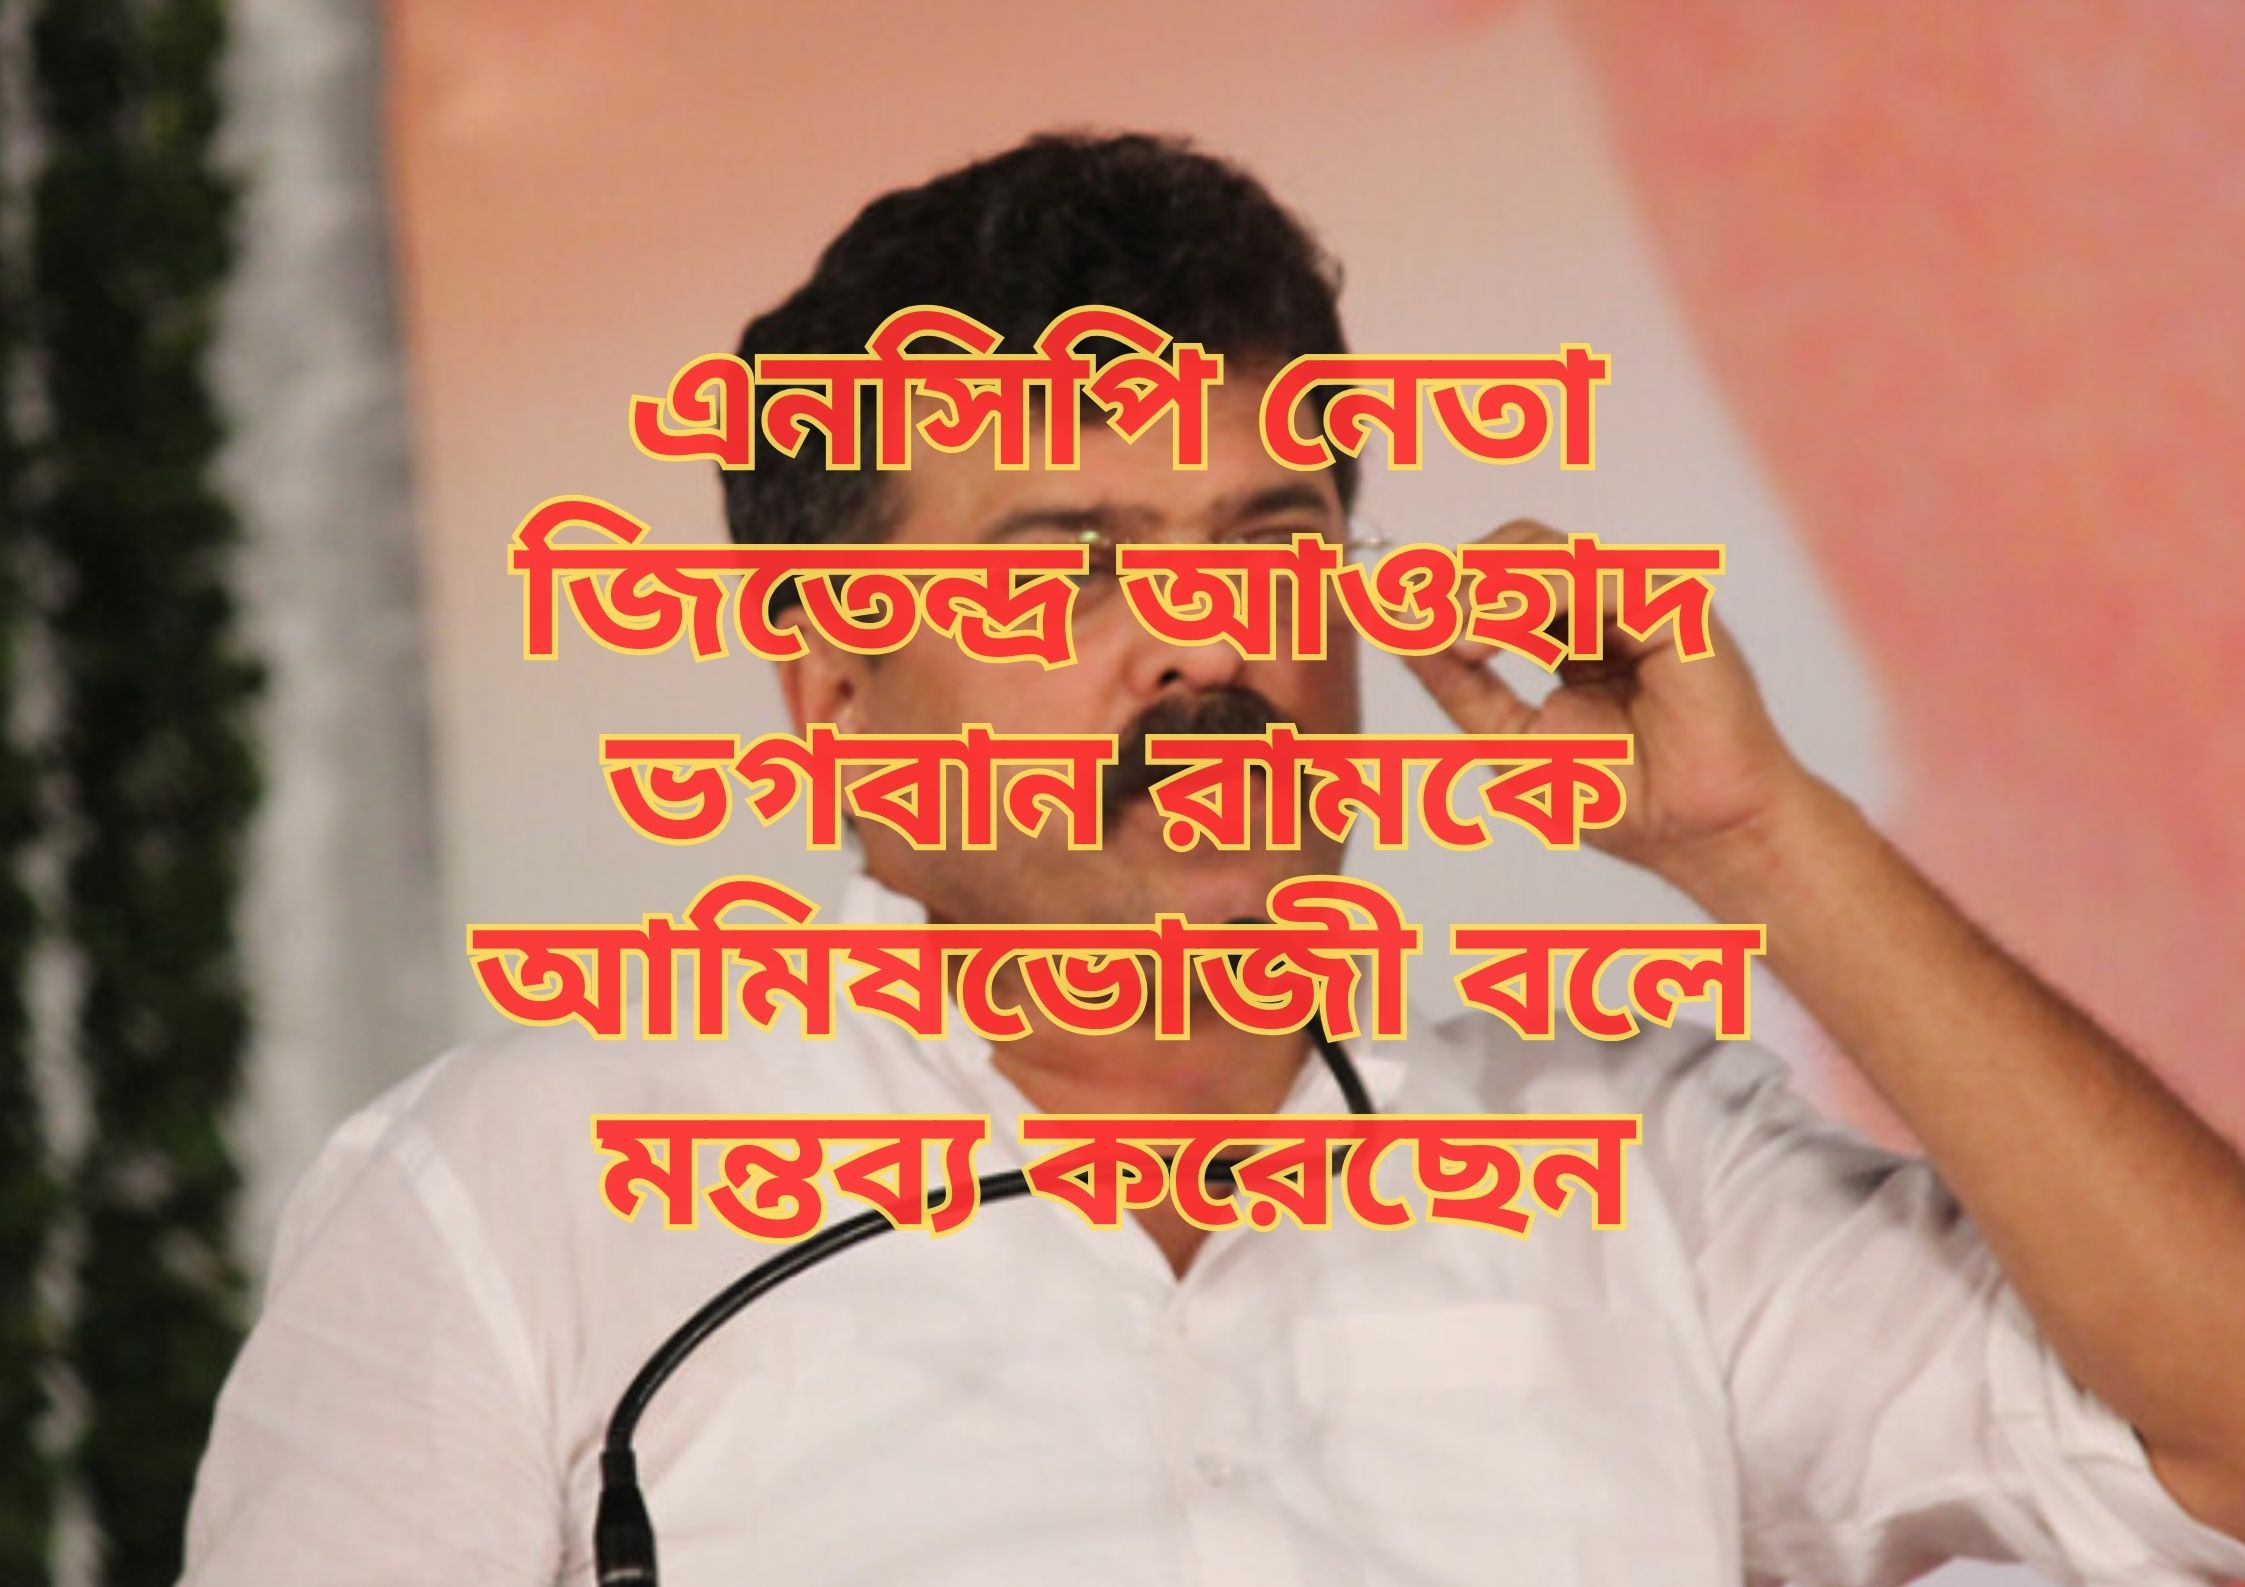 NCP Leader Jitendra Awhad ভগবান রামকে আমিষভোজী বলে মন্তব্য করেছেন